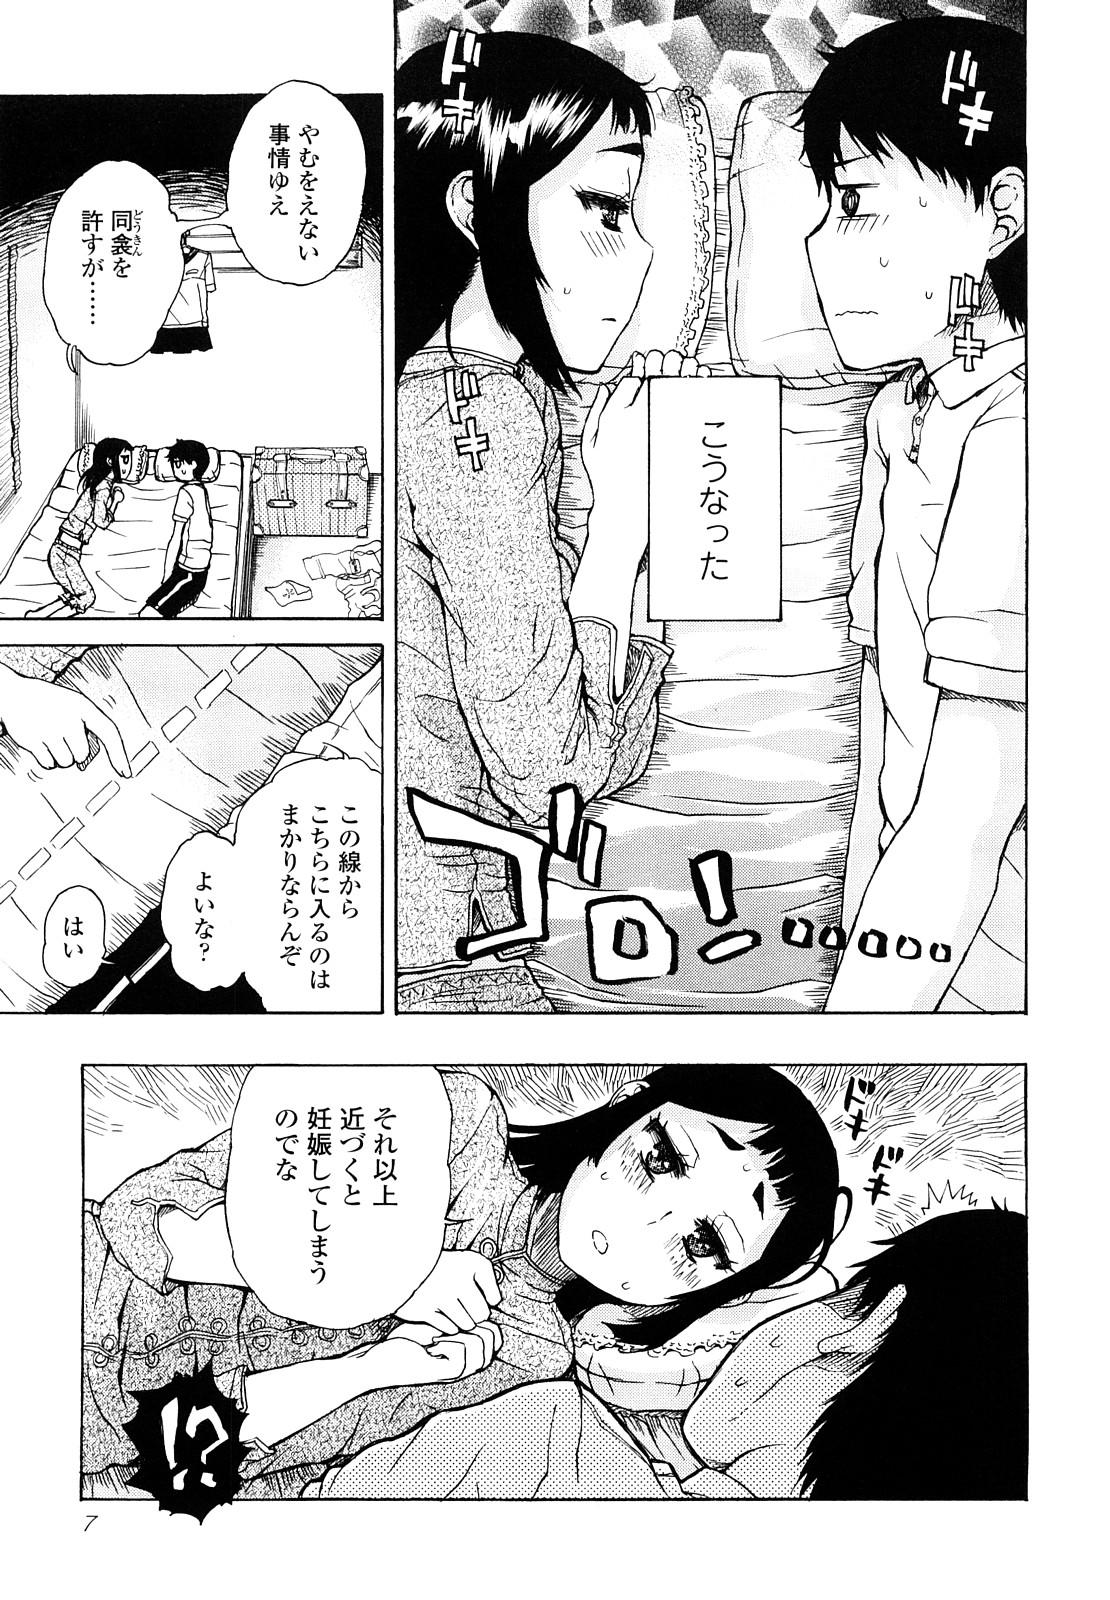 Boys Daisuke-kun no Hijitsuzai Bishoujo Plus Blow Job Contest - Page 7